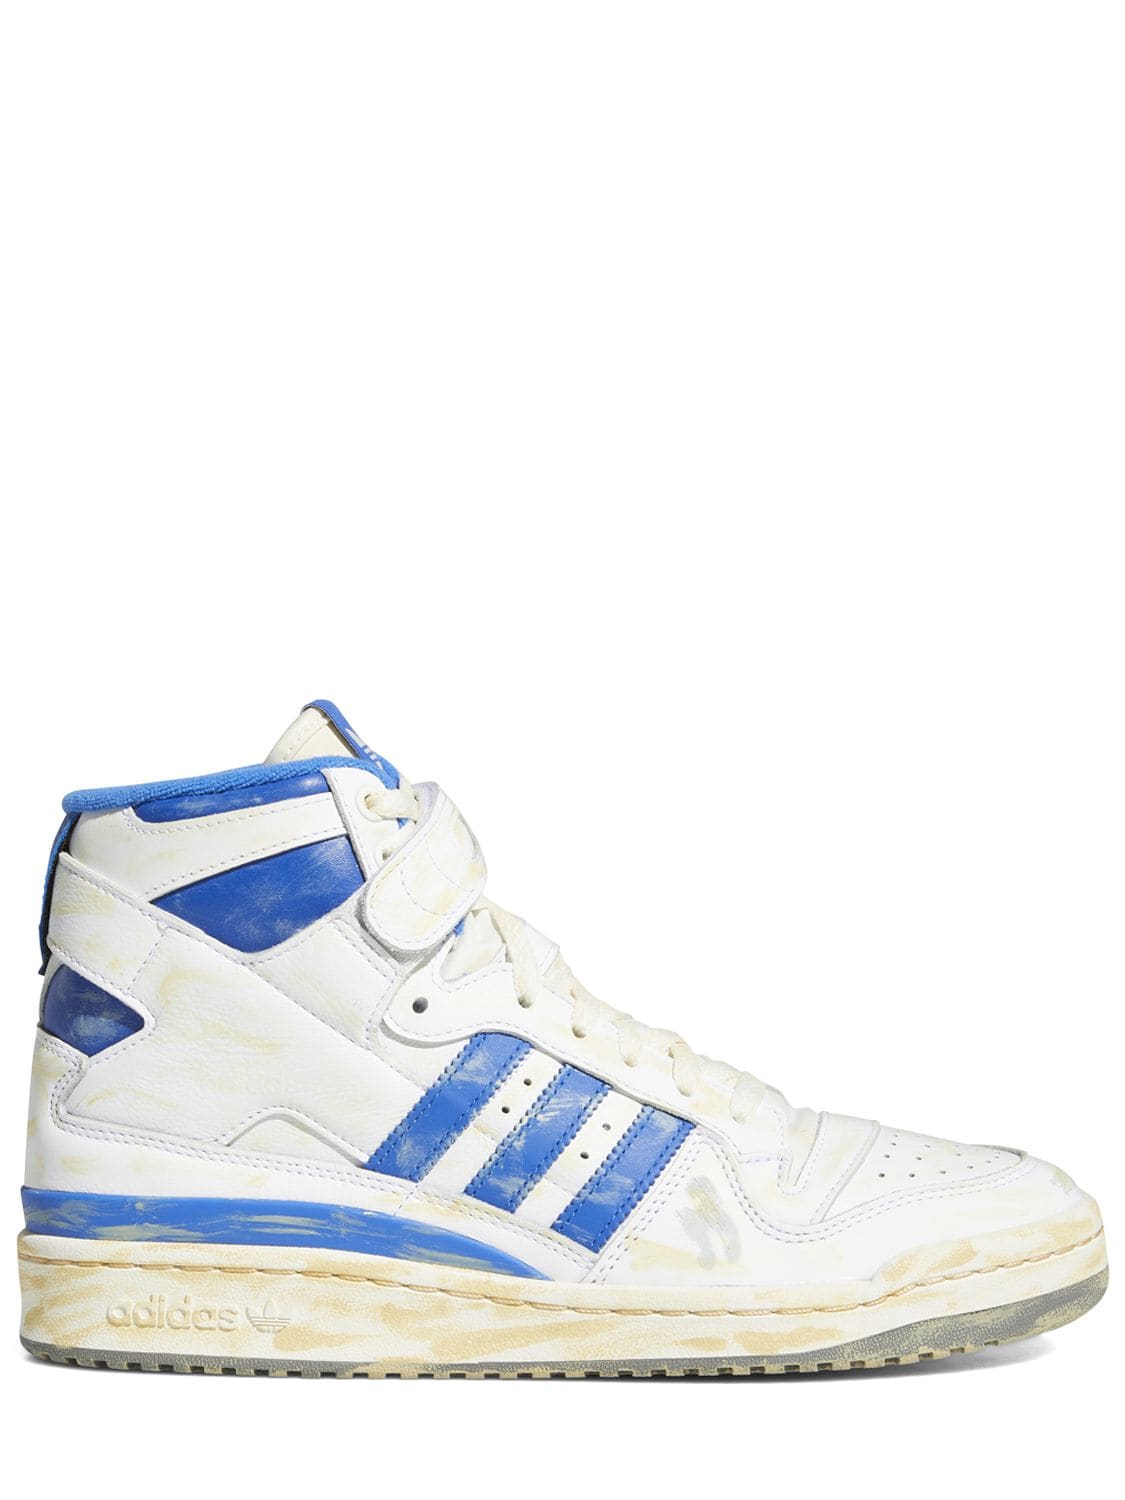 Adidas Originals Forum 84 High Vintage In White